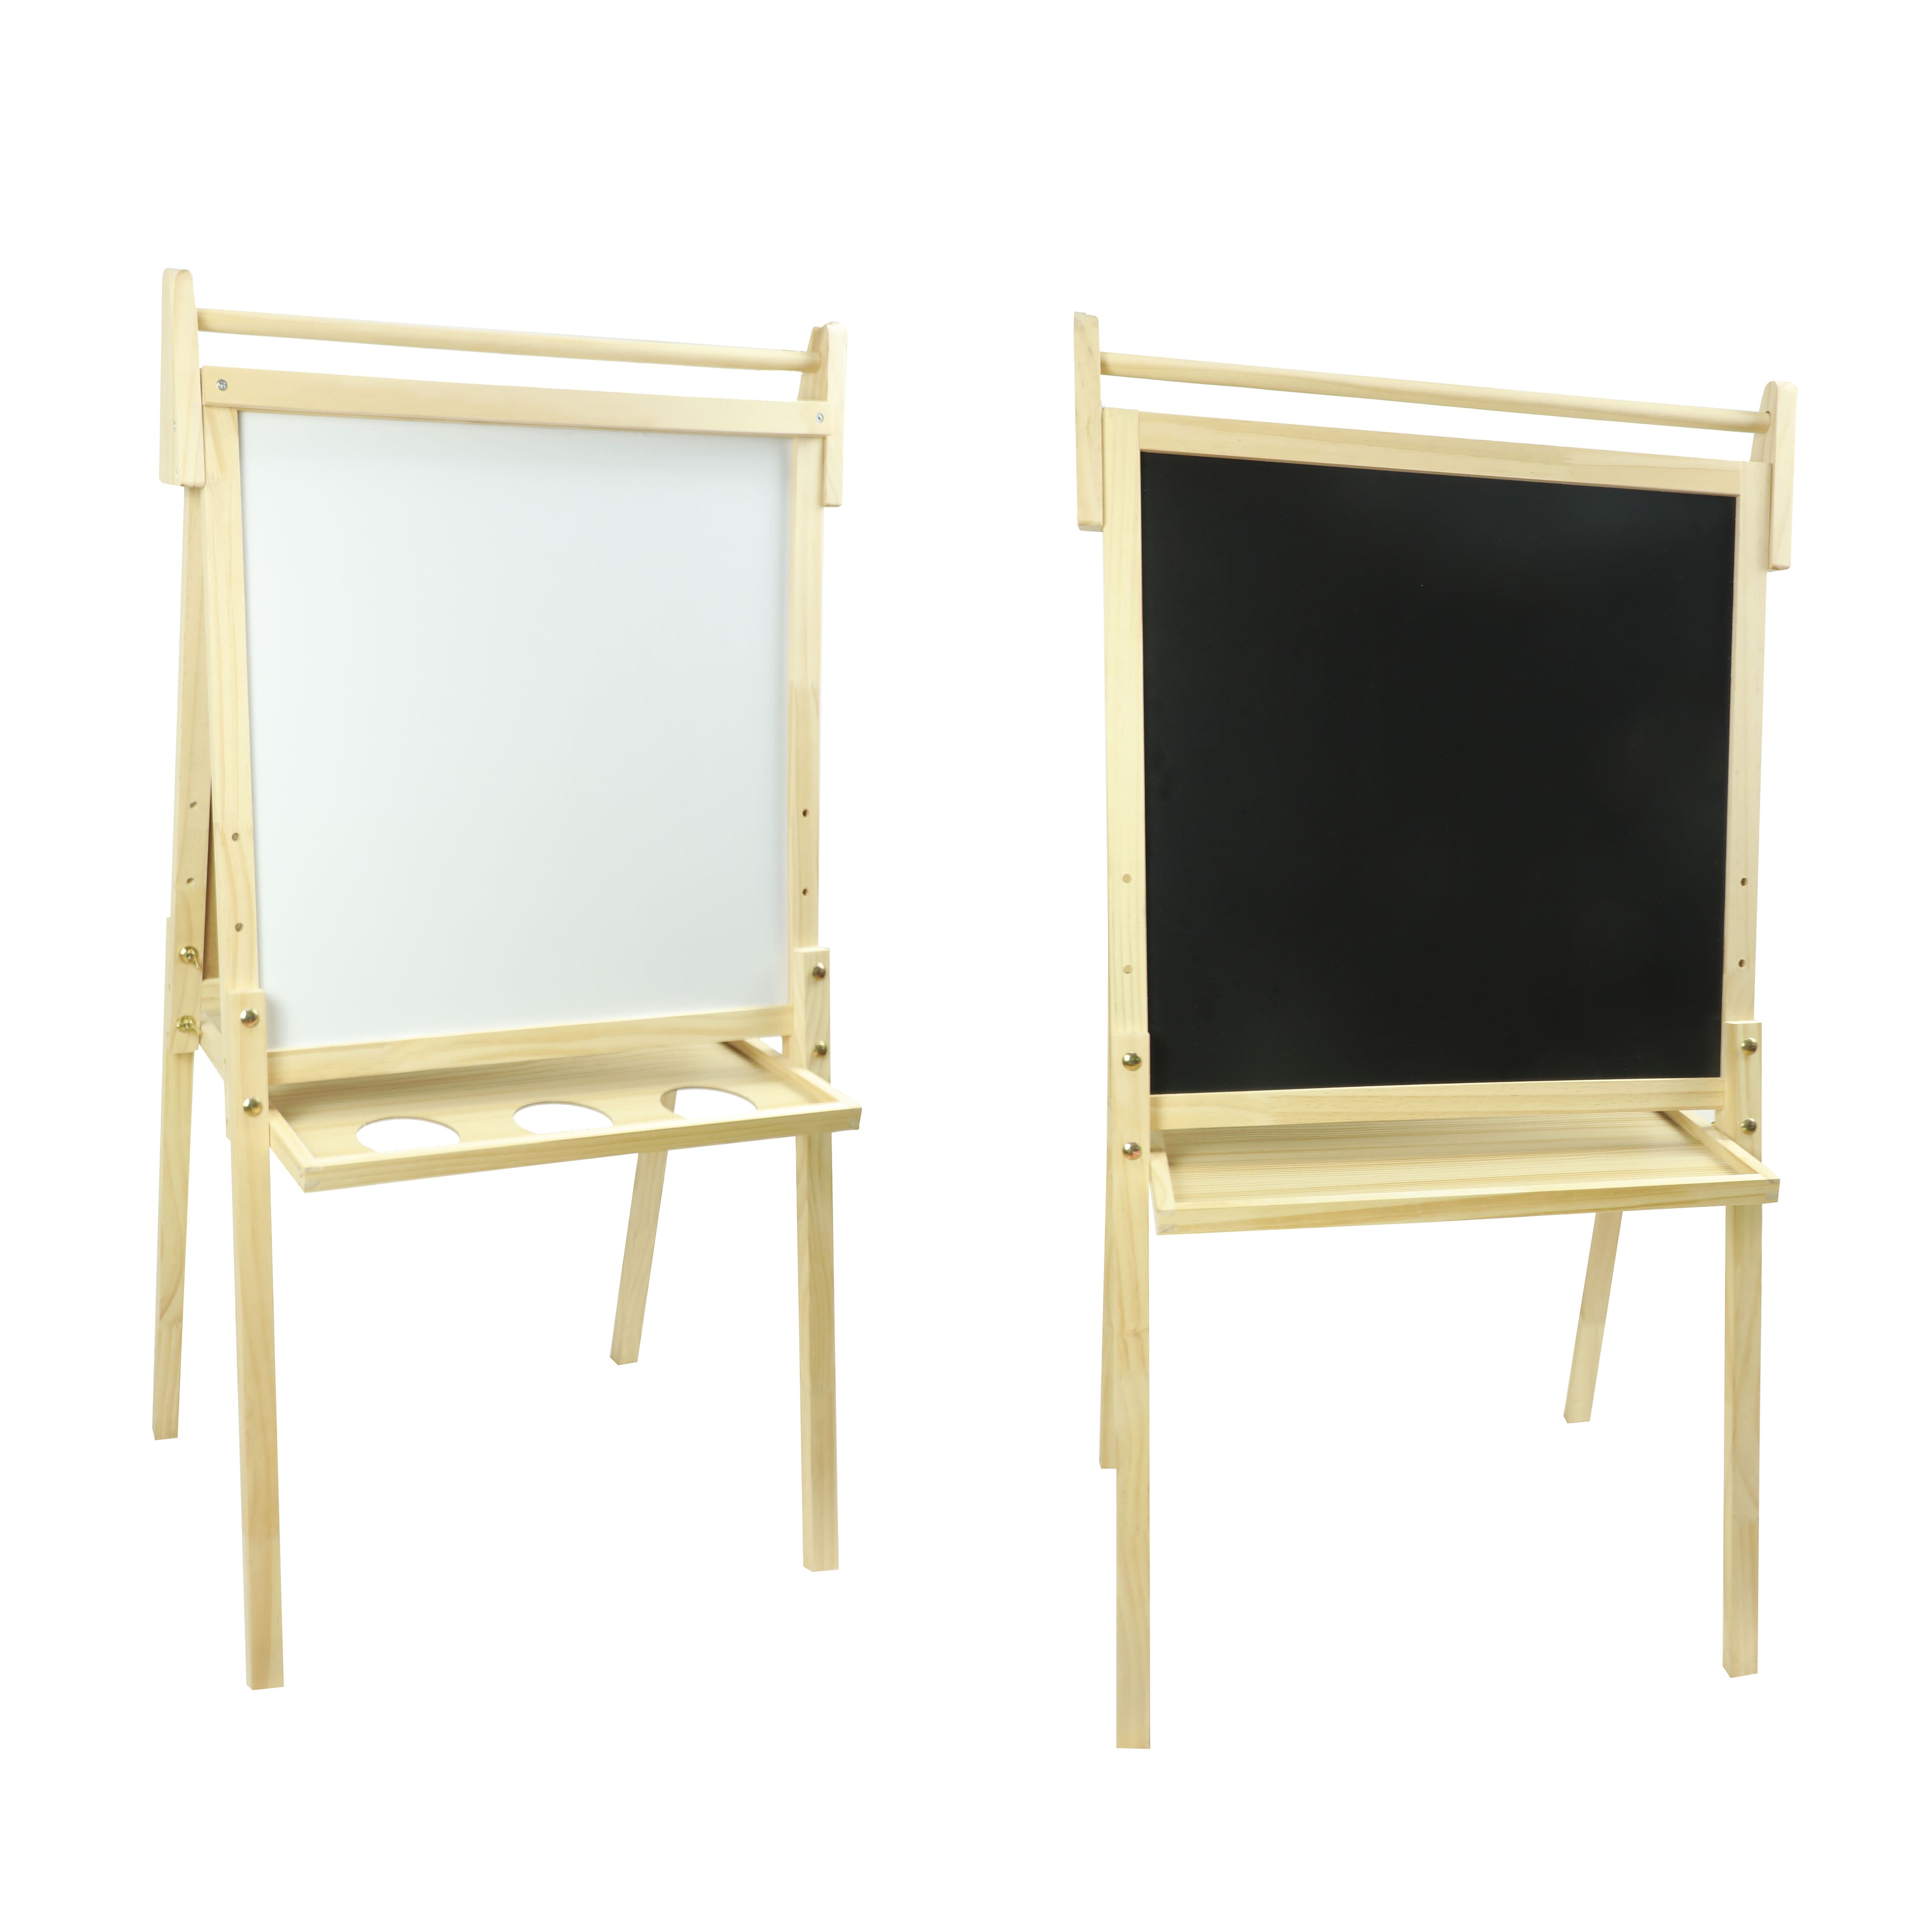 Double-Sided Adjustable Teacher's Easel - Whiteboard/Chalkboard